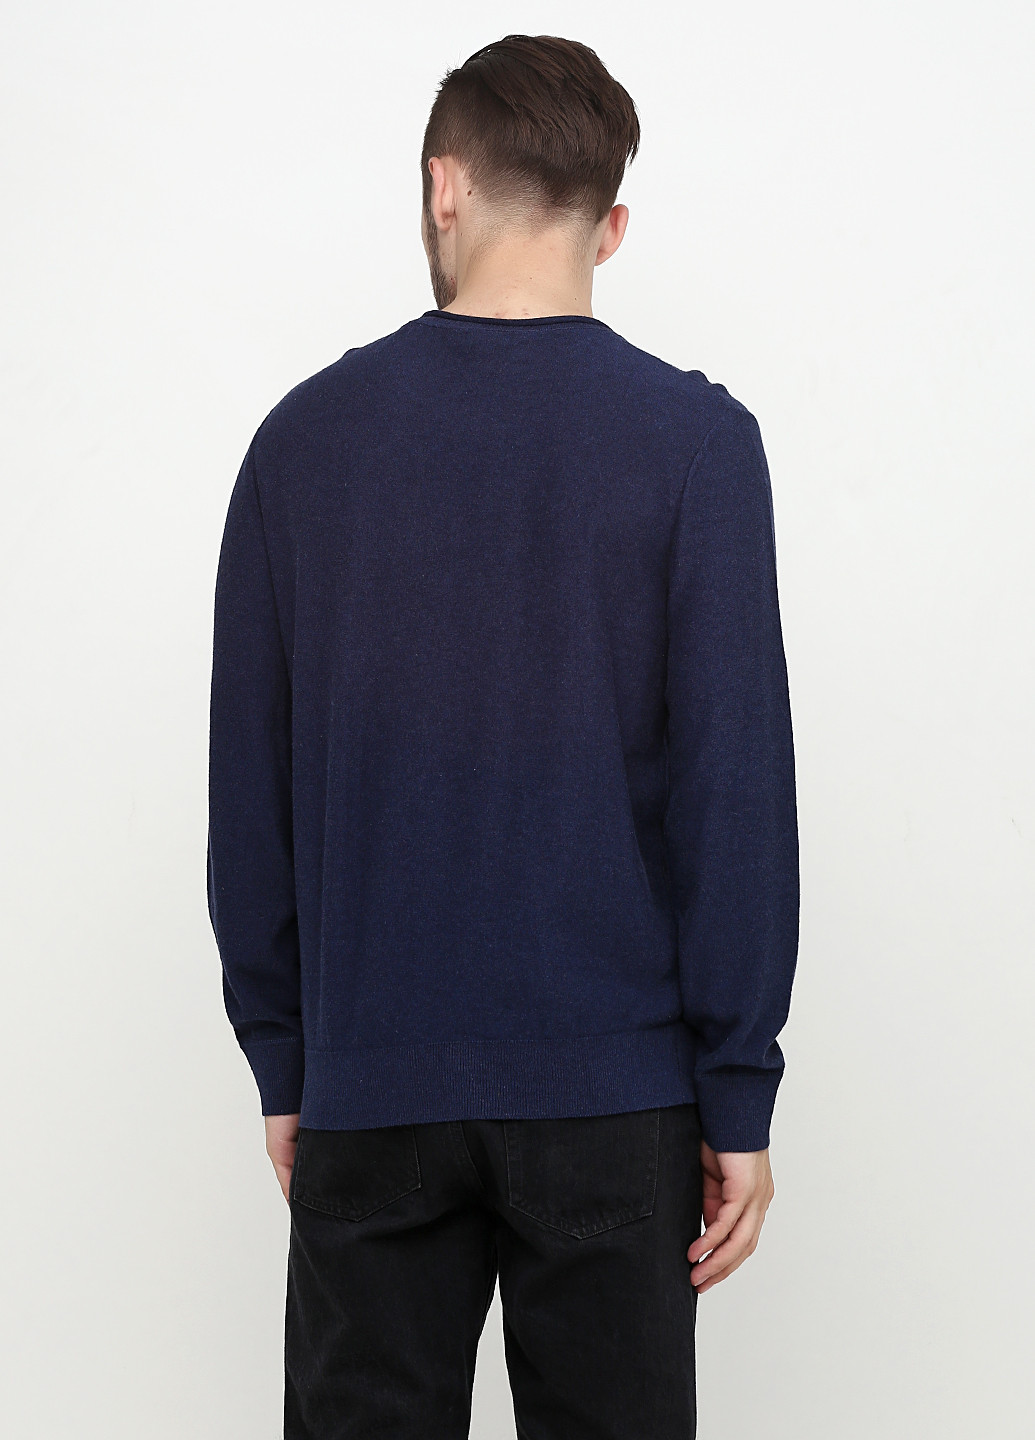 Синий демисезонный свитер джемпер Gap